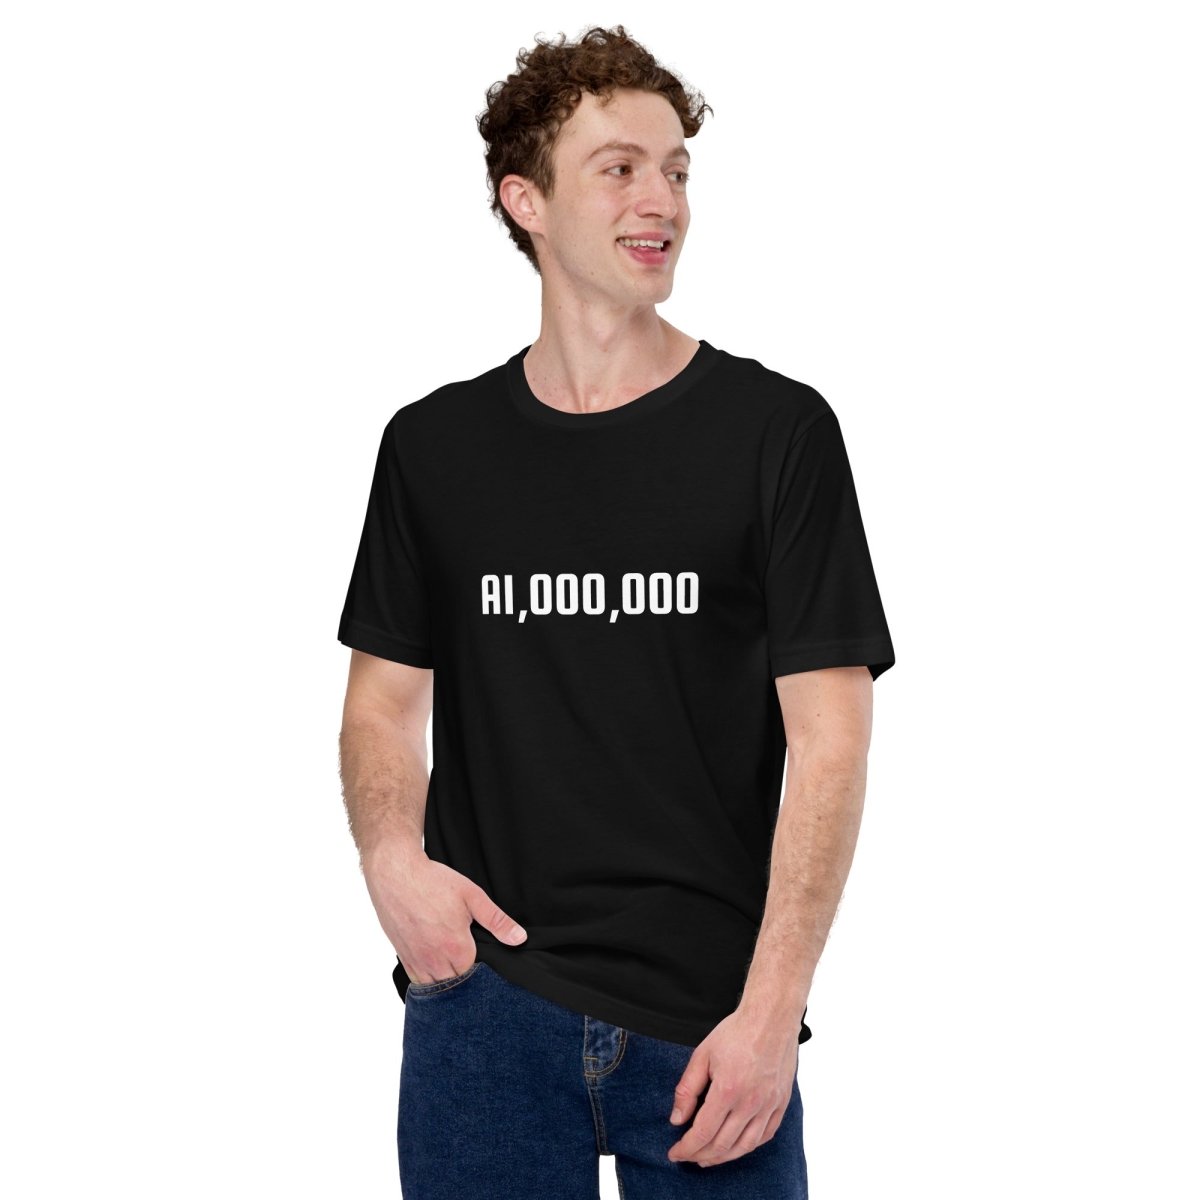 AI Million T - Shirt (unisex) - Black - AI Store